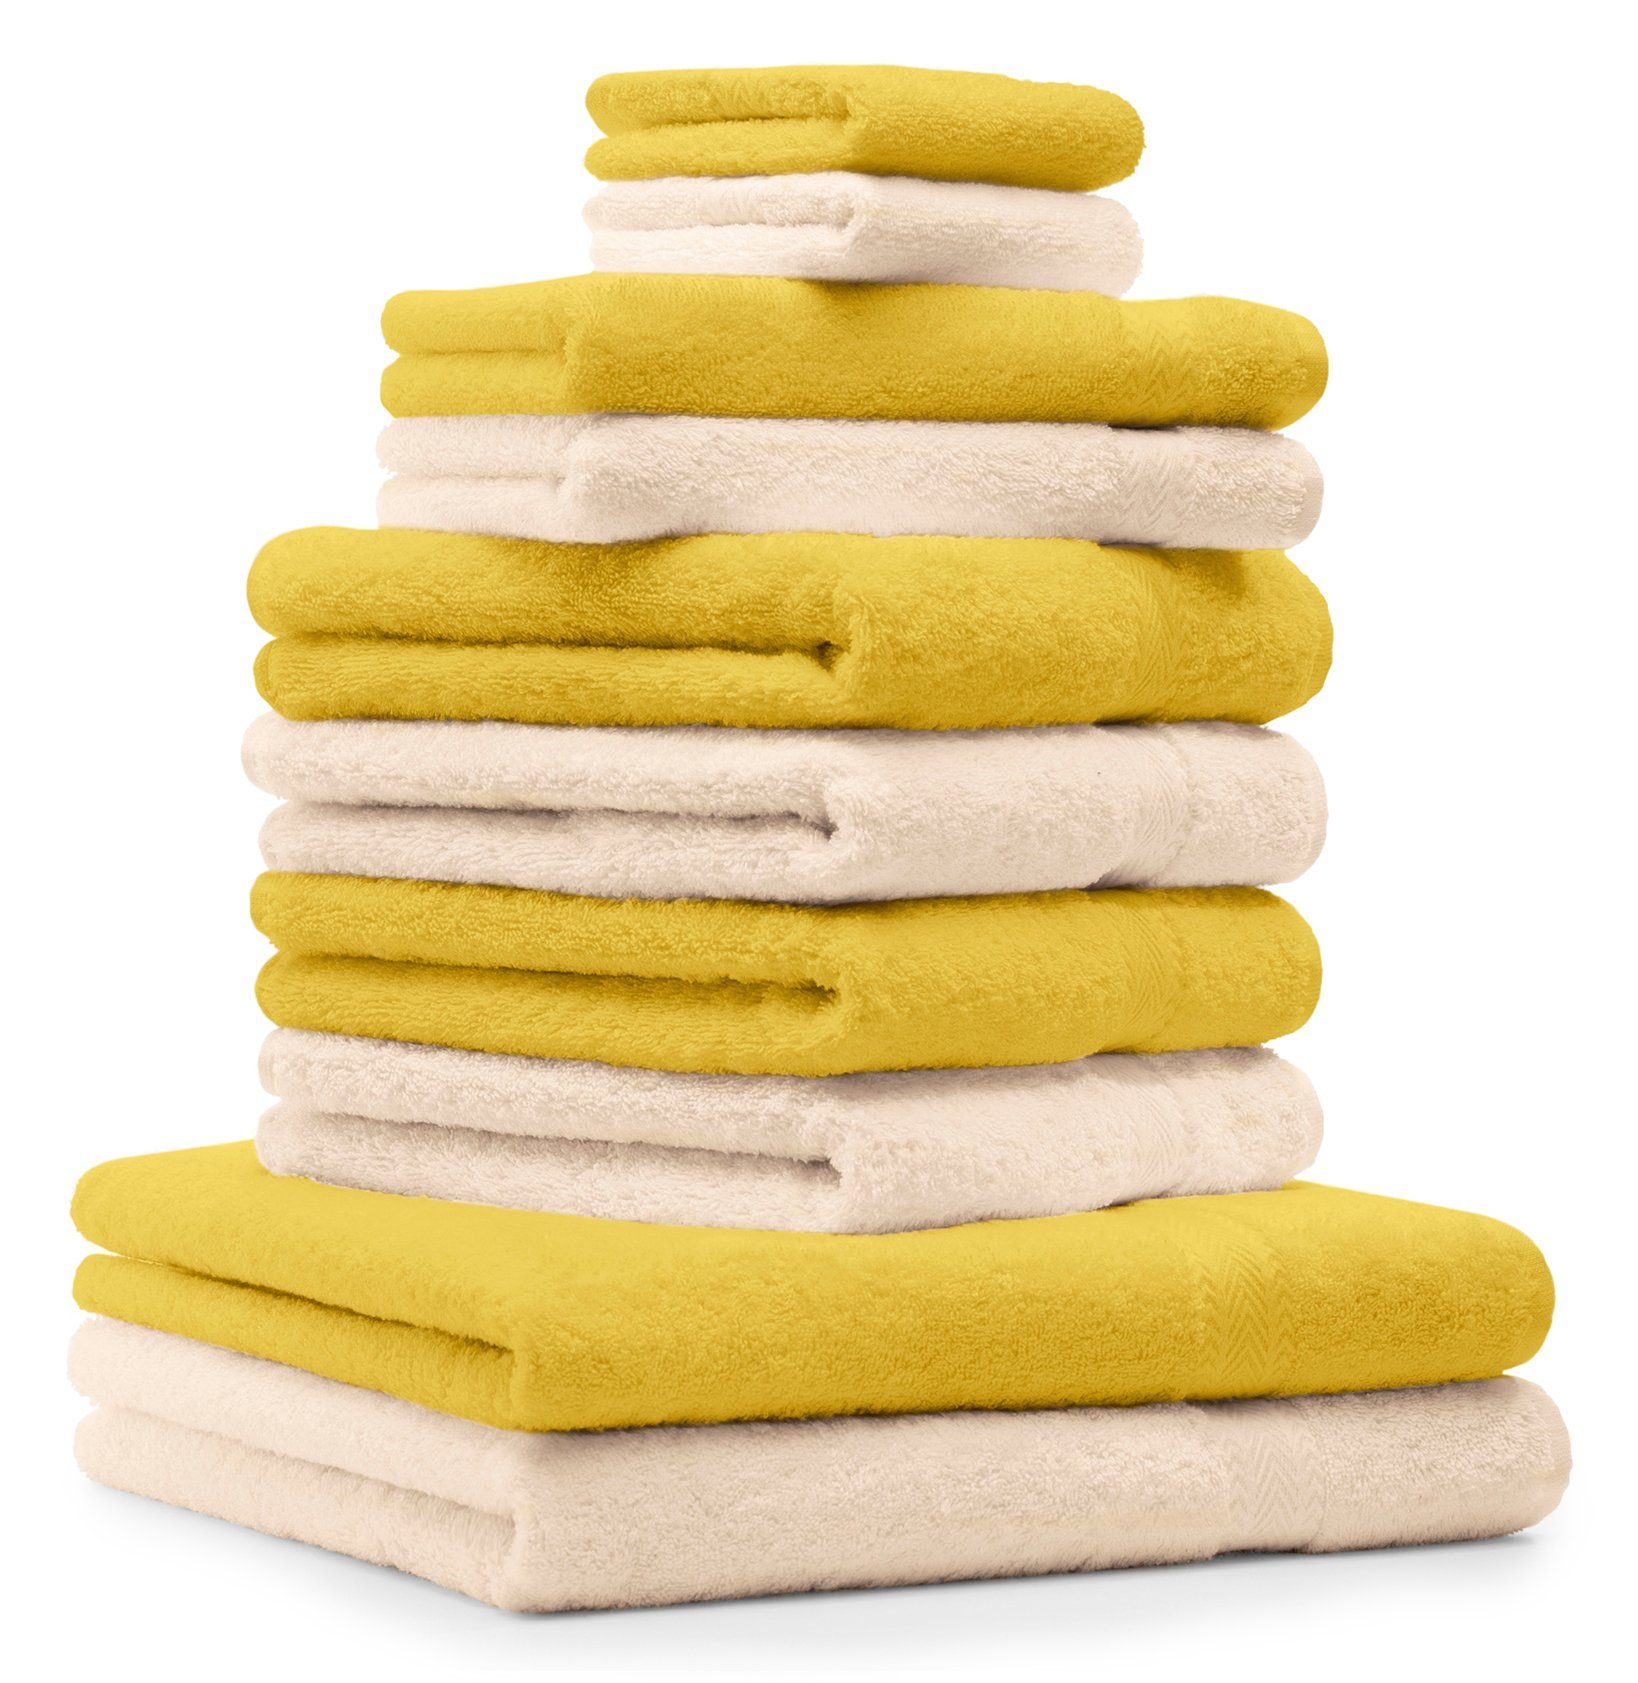 Betz Handtuch Set 10-TLG. & gelb Farbe Classic beige, 100% Baumwolle 100% Handtuch-Set Baumwolle